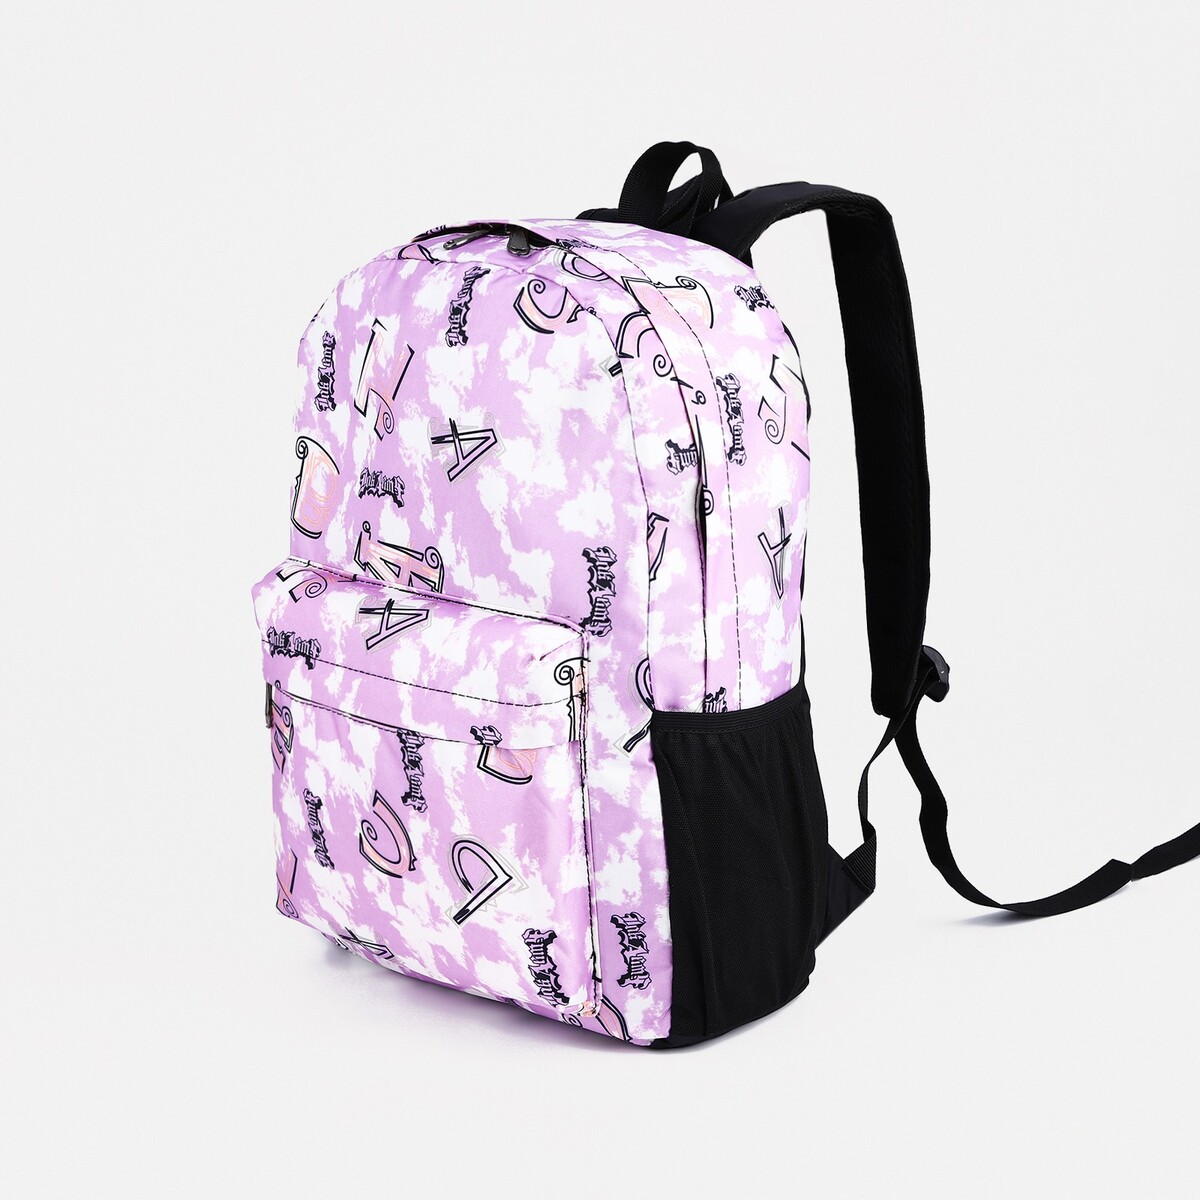 Рюкзак школьный из текстиля на молнии, 3 кармана, цвет фиолетовый рюкзак на молнии фиолетовый